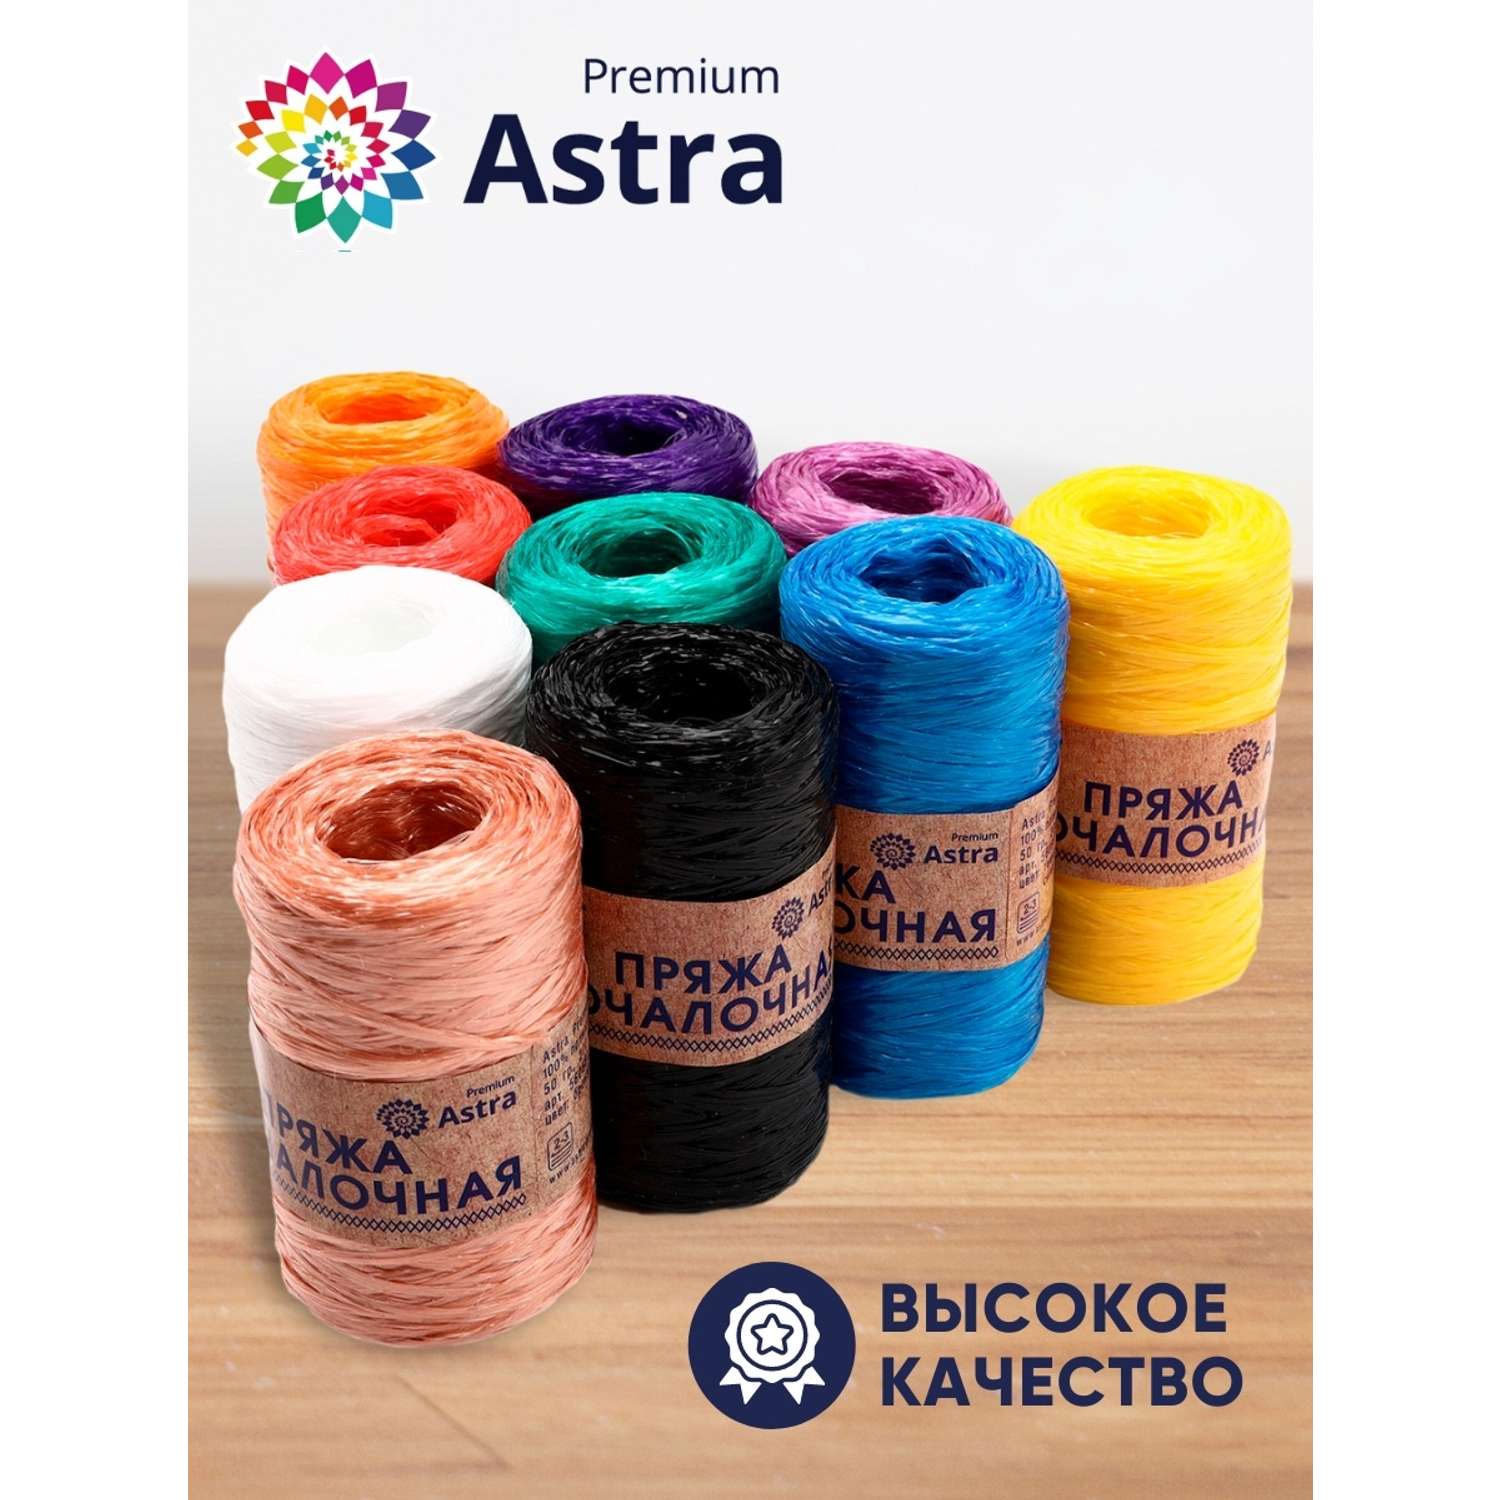 Пряжа Astra Premium для вязания мочалок пляжных сумок 200 м 10 шт разноцветные - фото 2